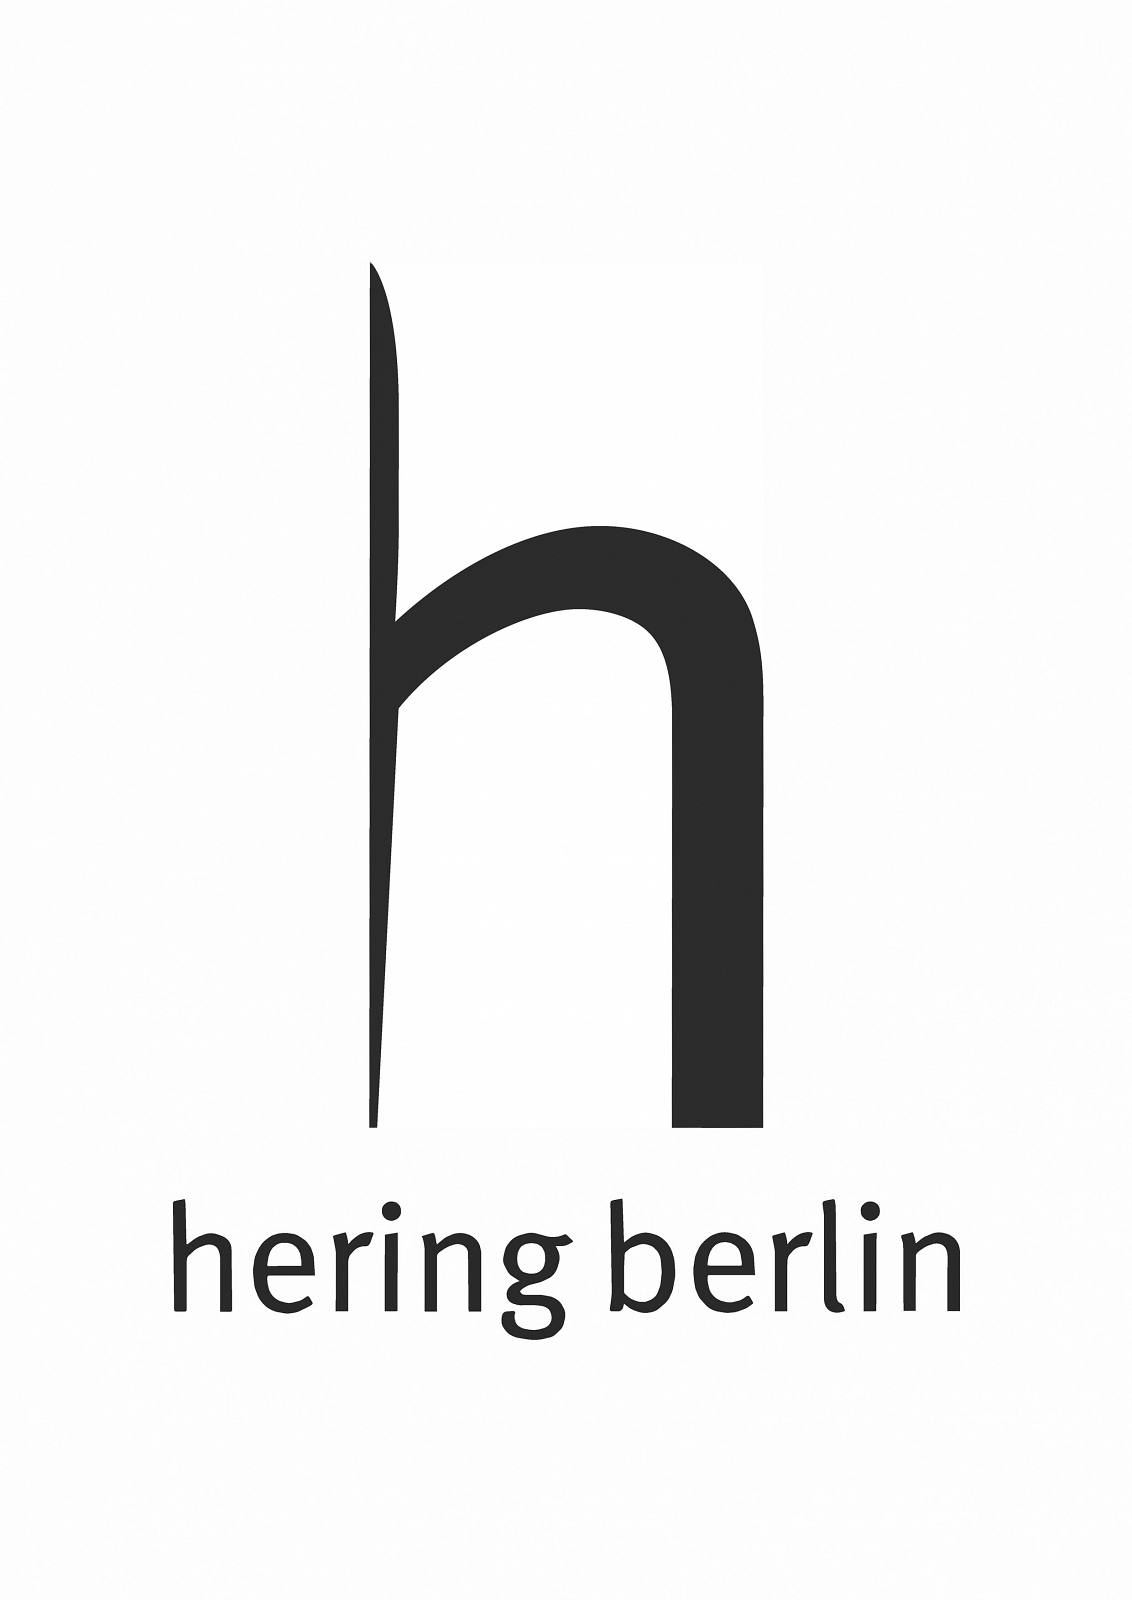 Hering Berlin